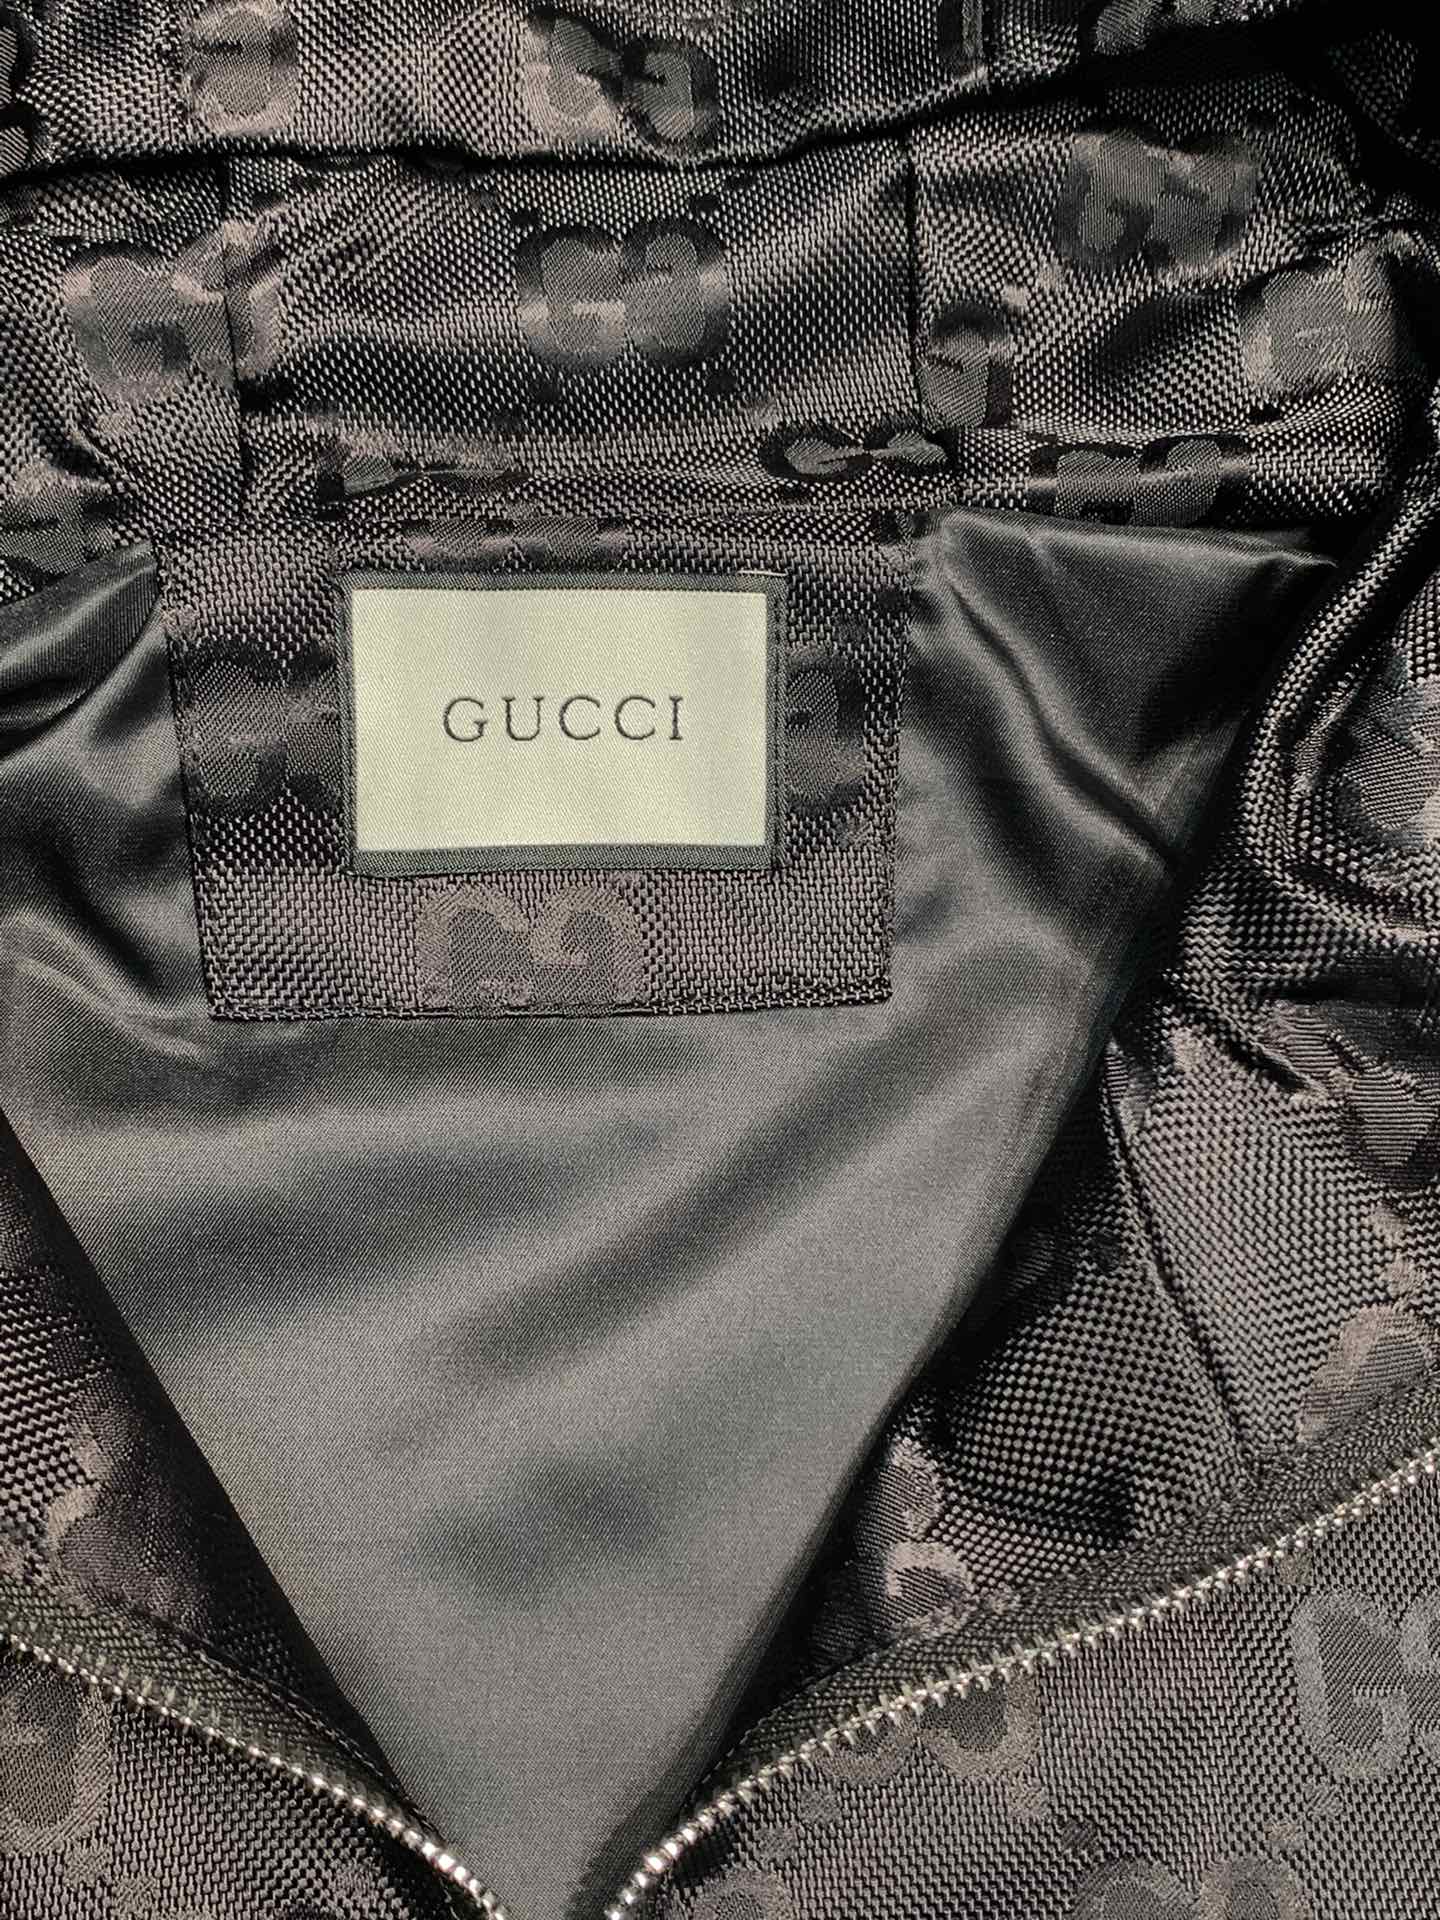 Gucci古驰独家专供最新春秋时尚连帽夹克经典设计感与颜值爆棚的外套品质更是无法挑剔品控可以直接入手不容